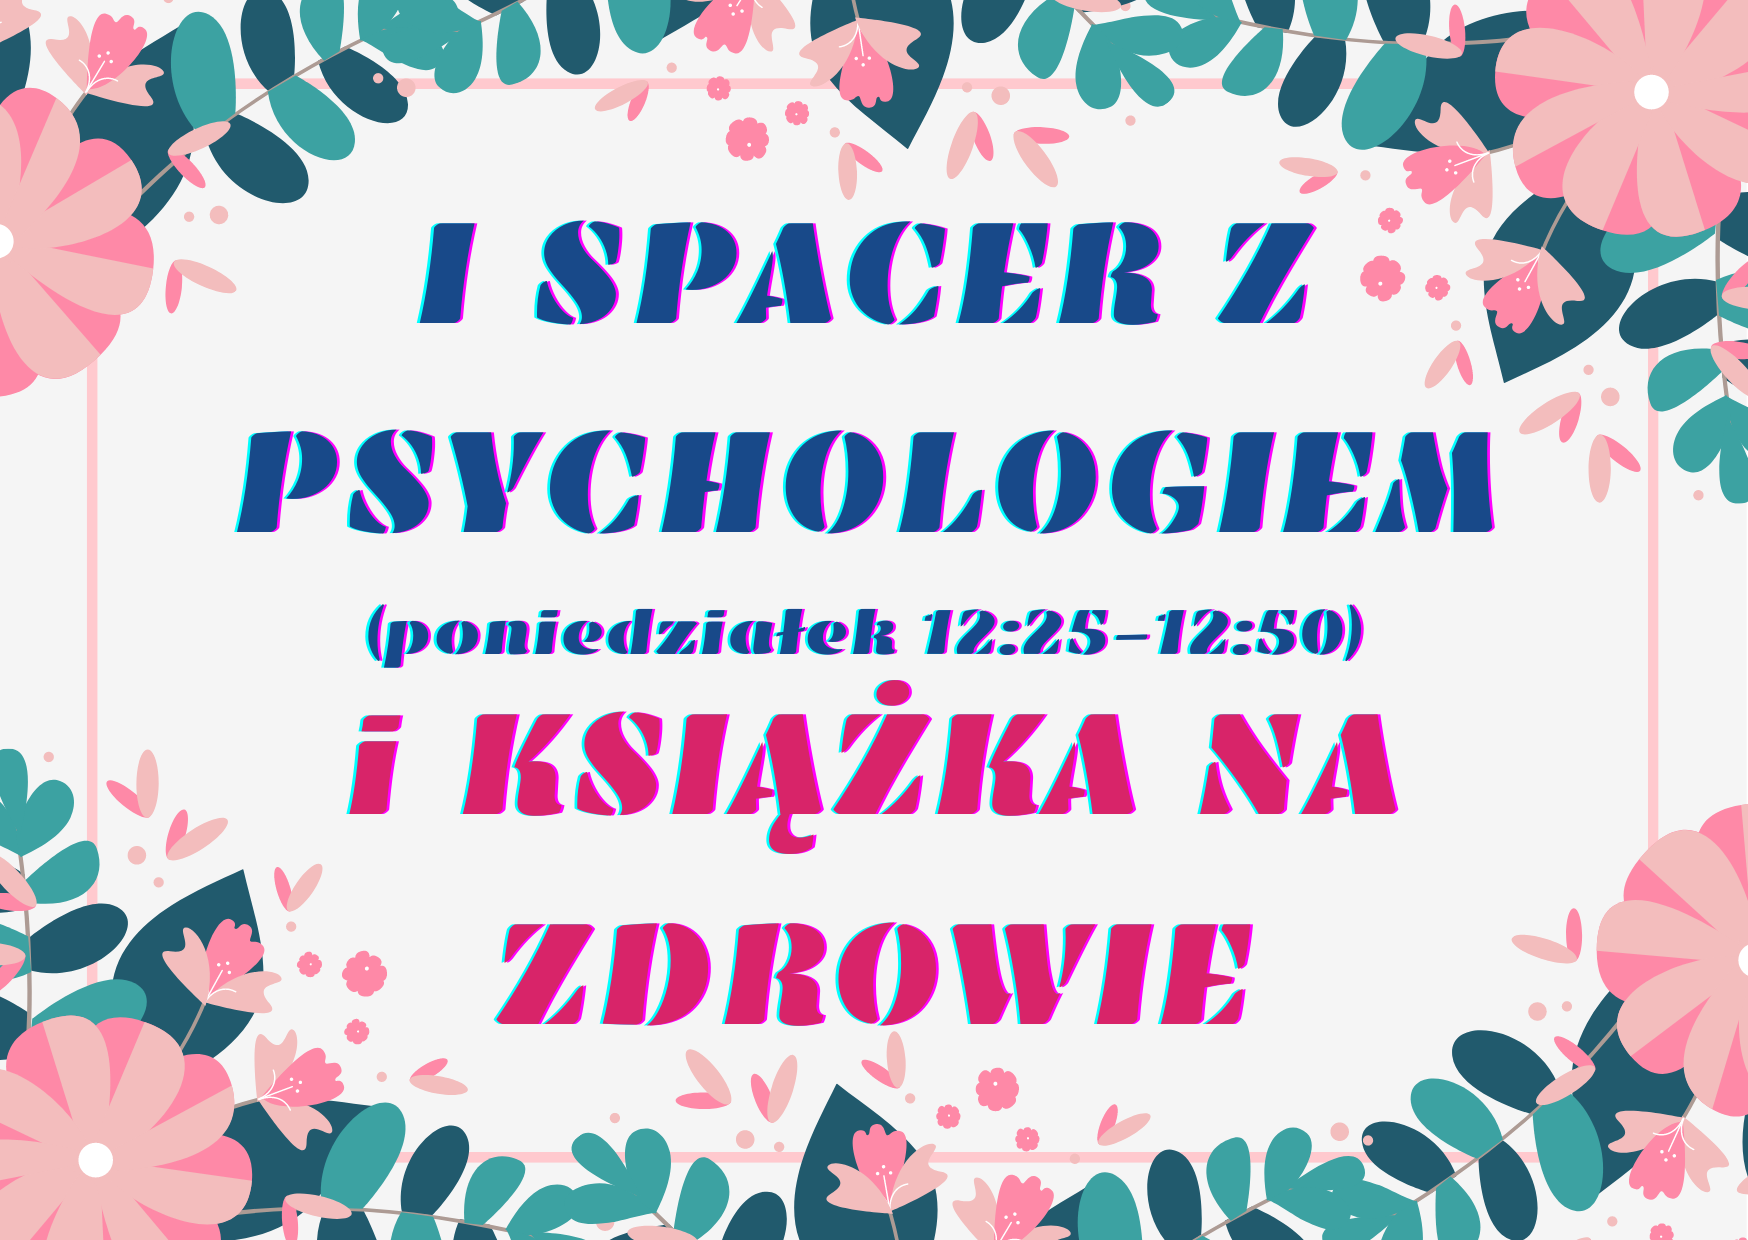 Różowe i niebieskie napisy : I Spacer z psychologiem i książka na zdrowie.